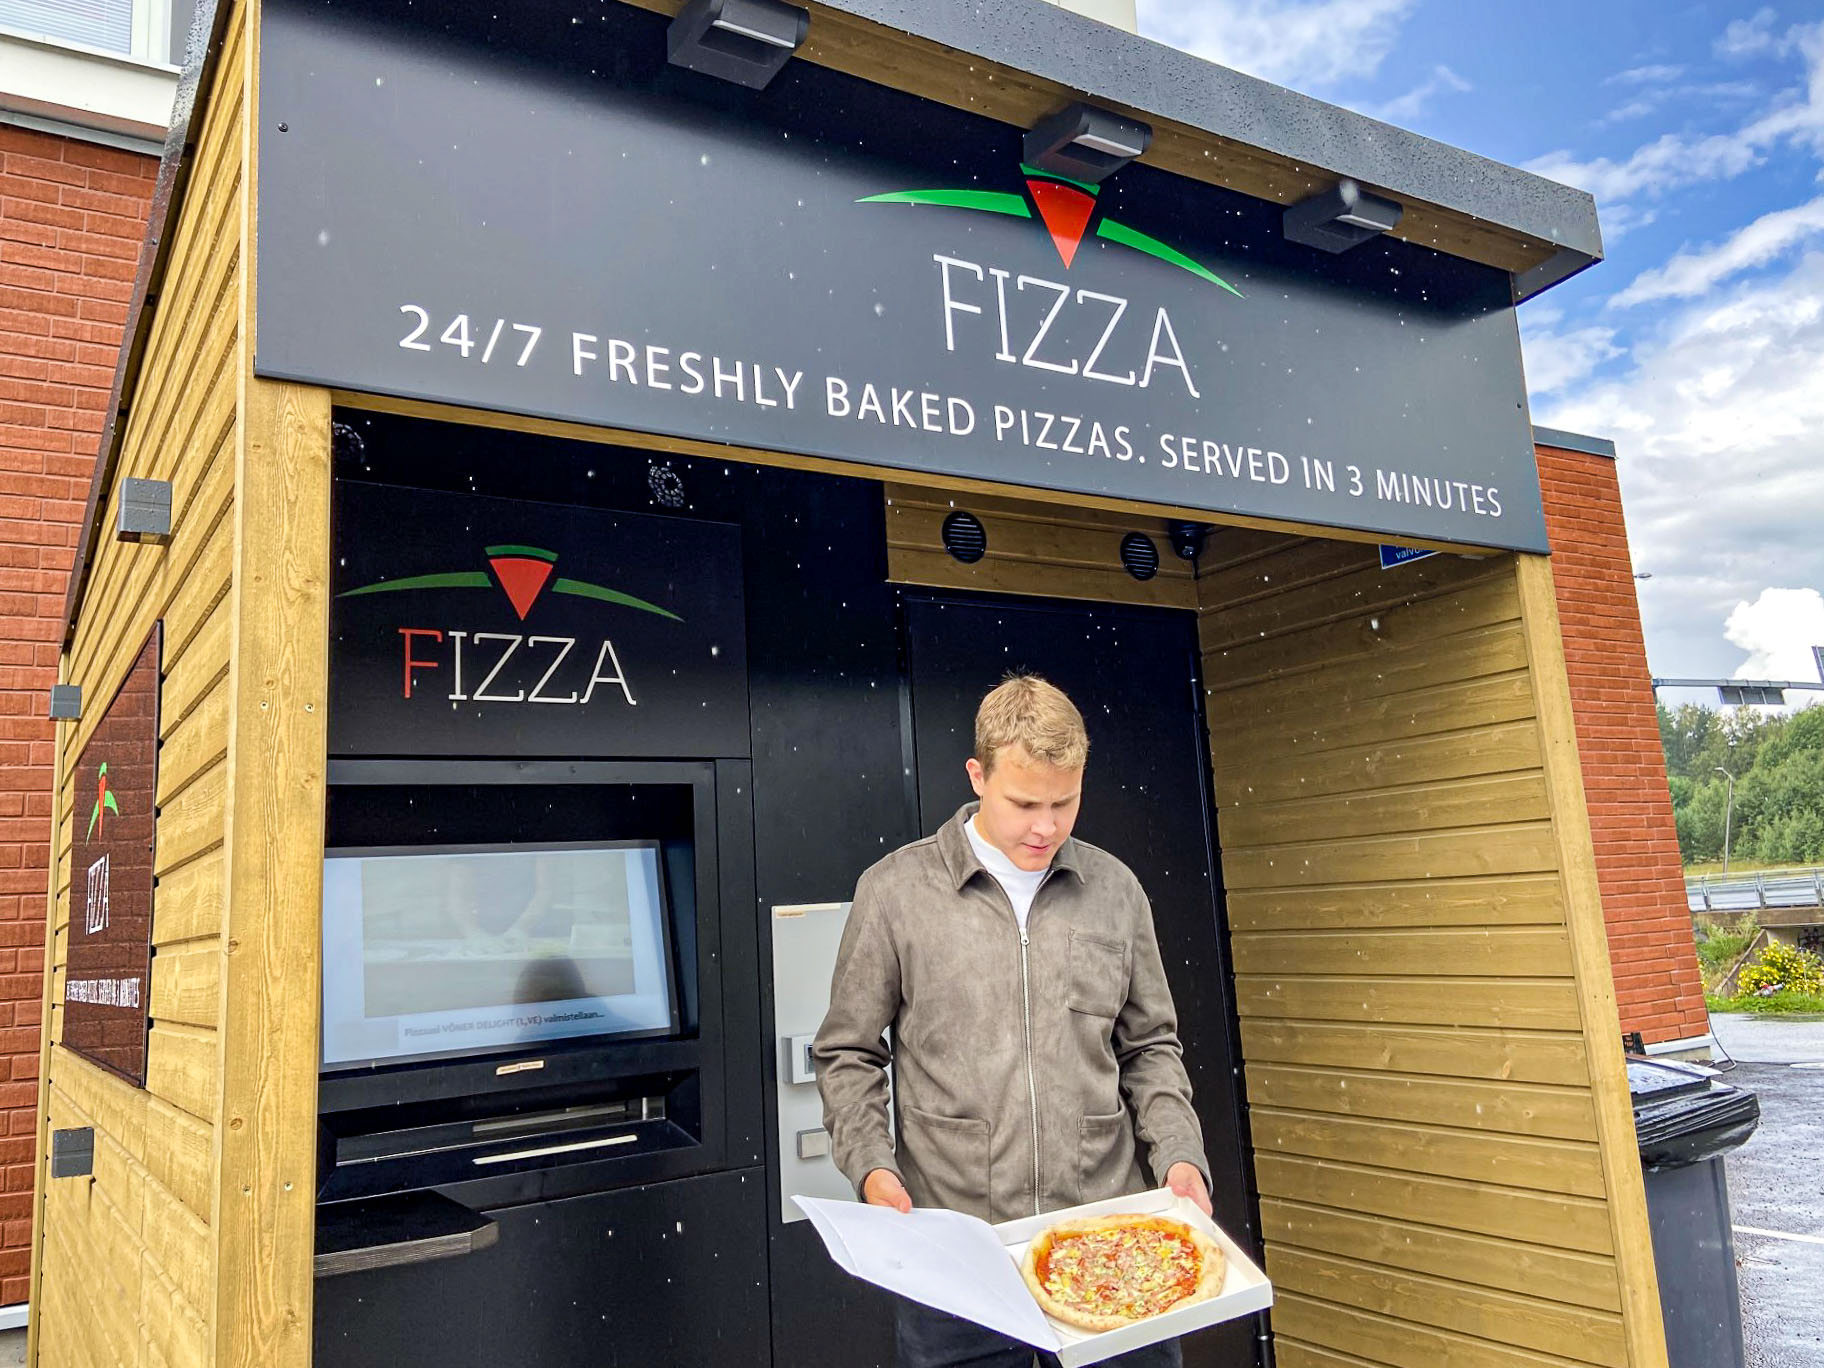 En man står framför pizzaautomaten. Han håller i en pizza som han ser på.